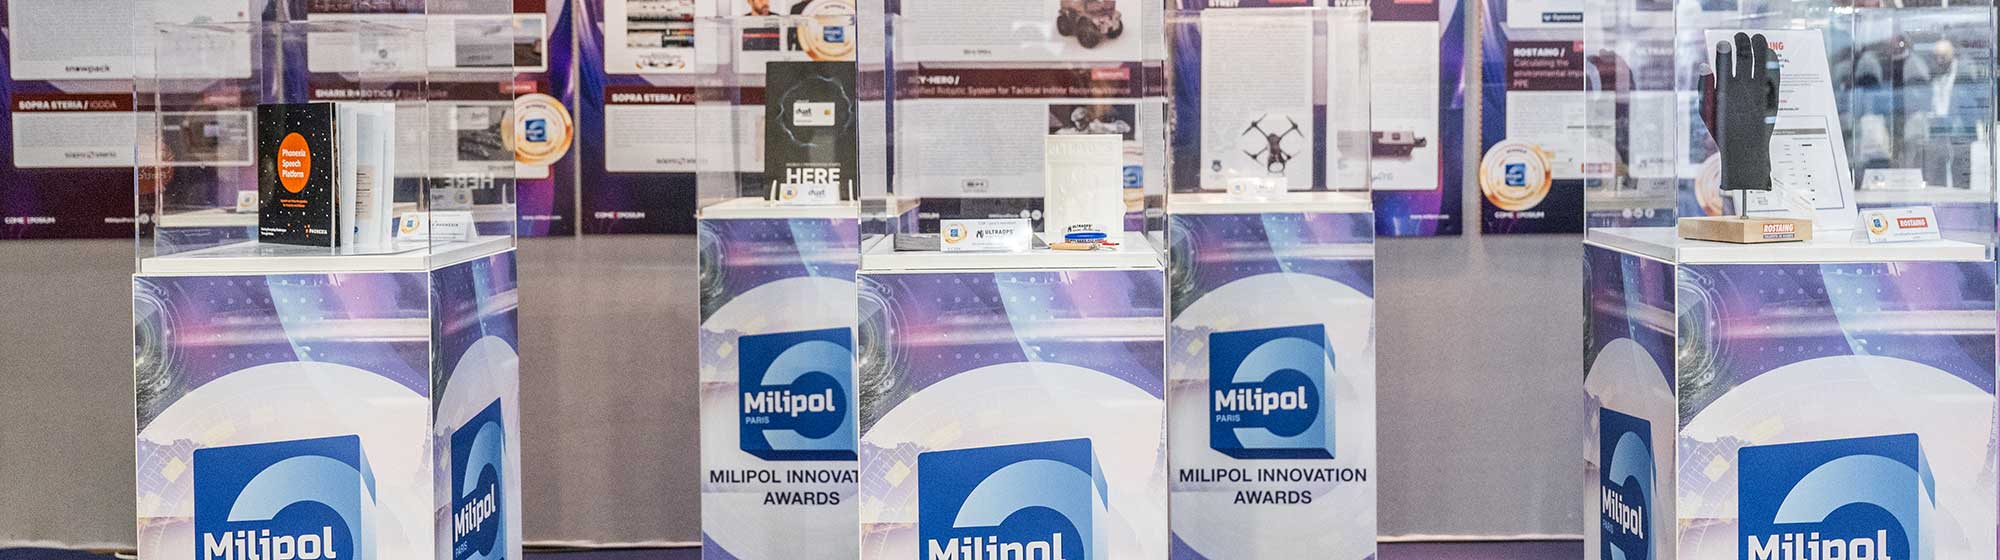  Produits lauréats des Milipol Innovation Awards exposés par catégorie